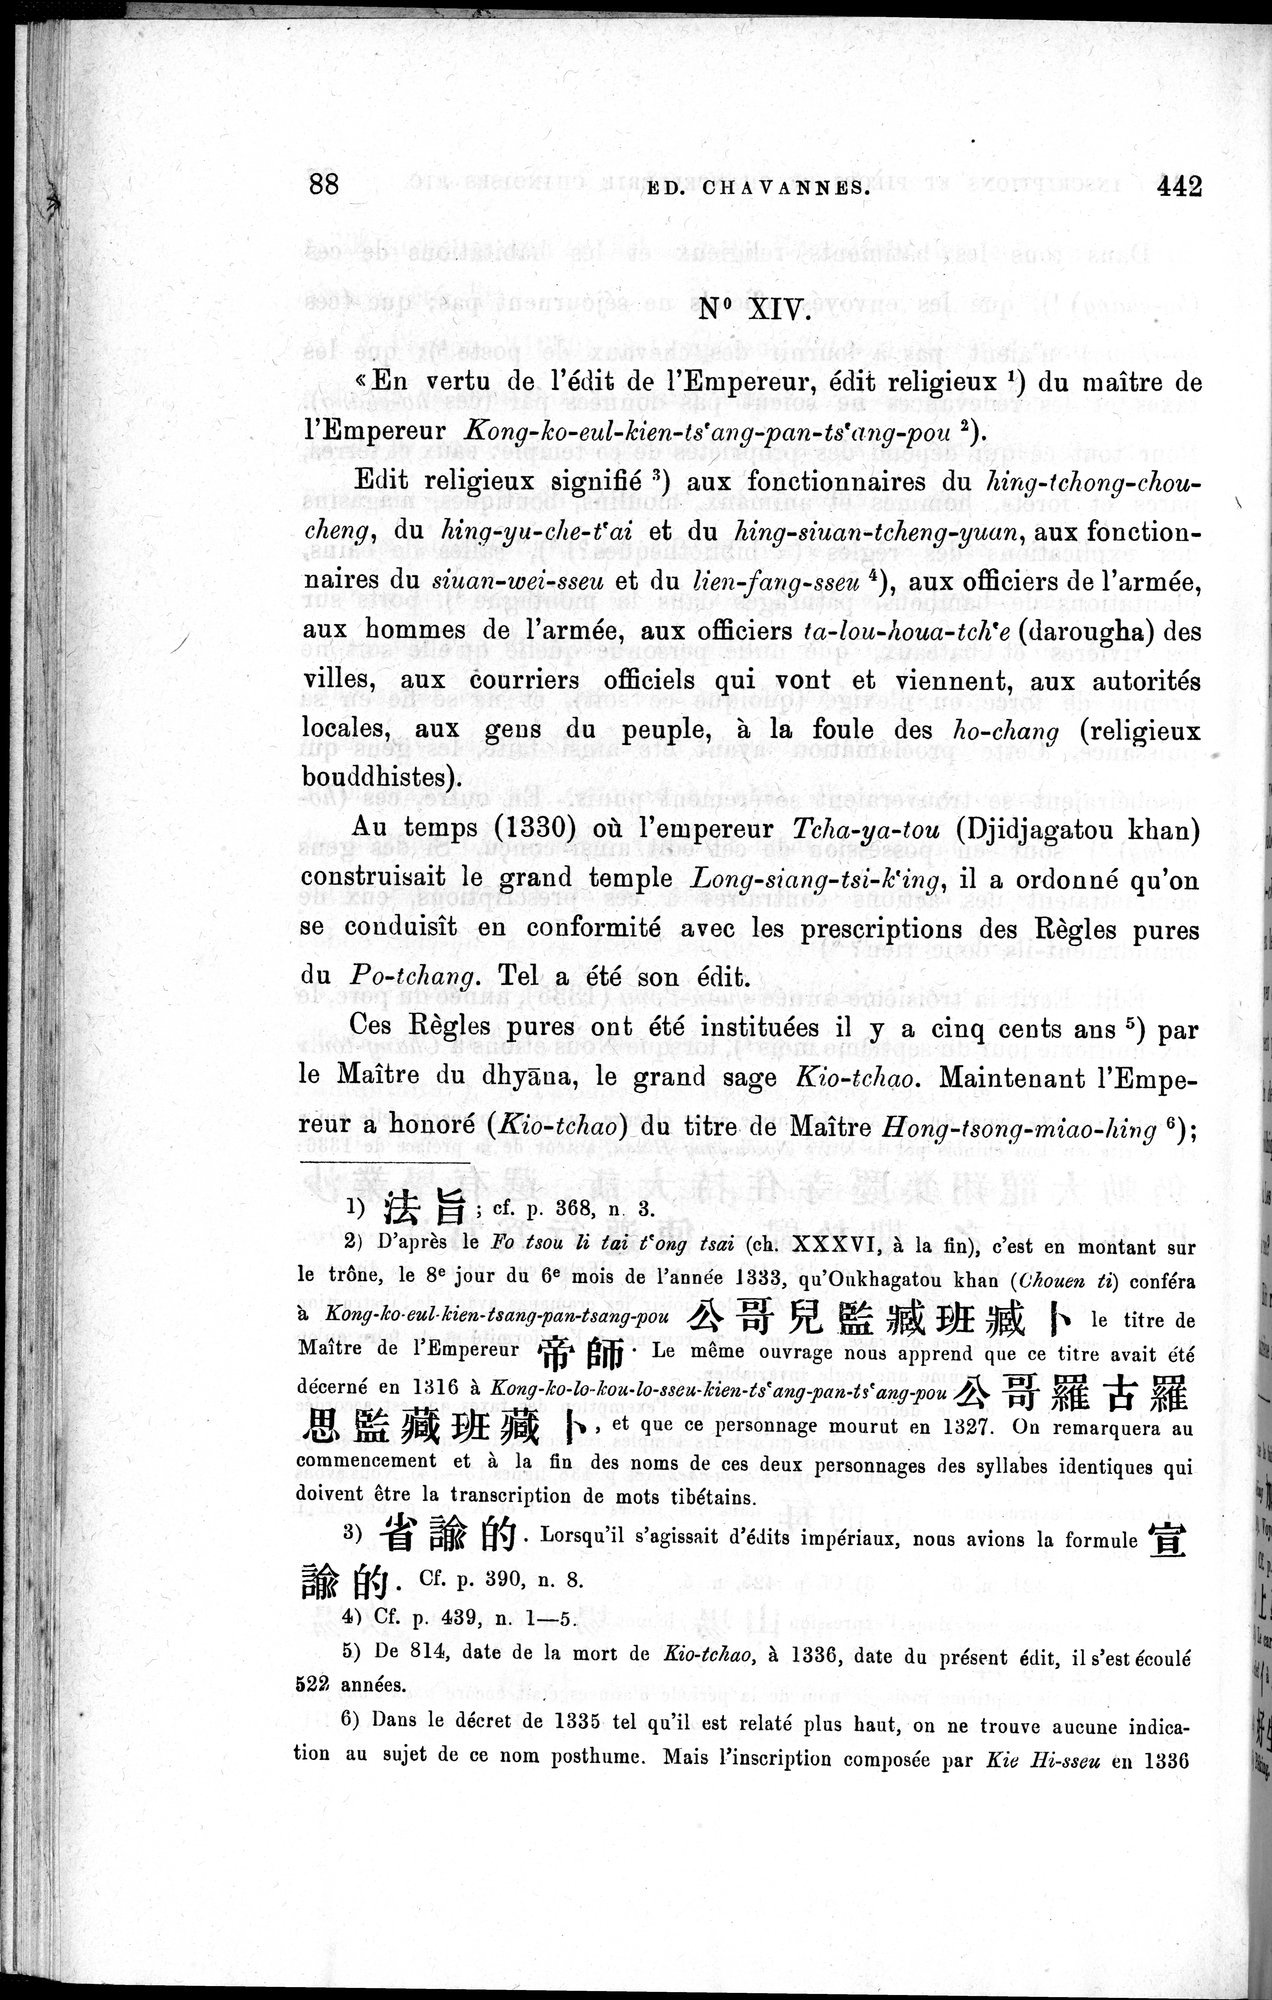 Inscriptions et pièces de Chancellerie Chinoises de l'époque mongol : vol.1 / Page 104 (Grayscale High Resolution Image)